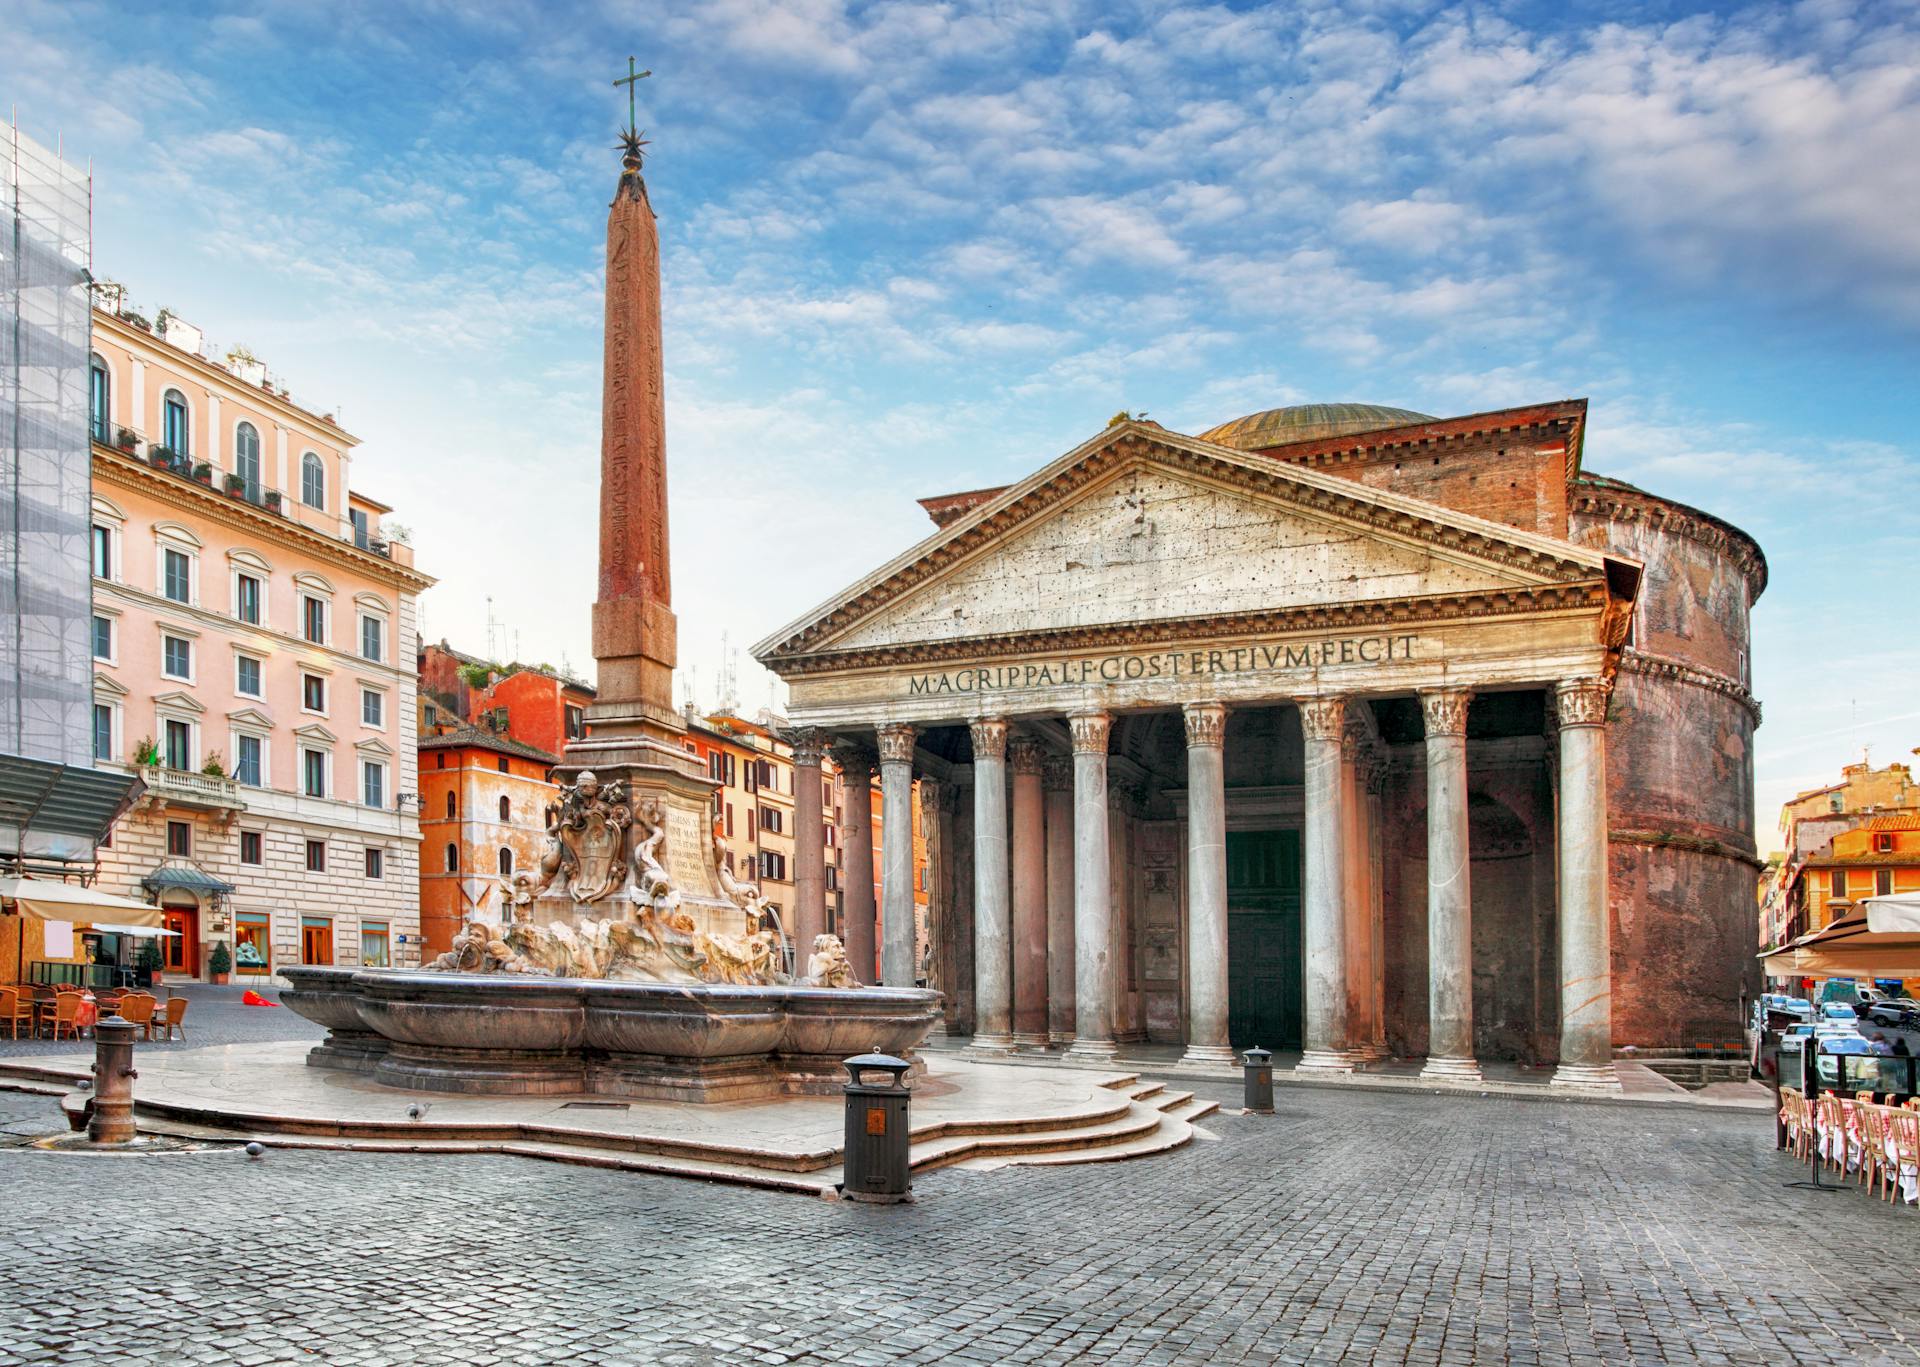 Näkymässä on Pantheon, joka on parhaiten säilynyt antiikinaikainen monumentti Roomassa.